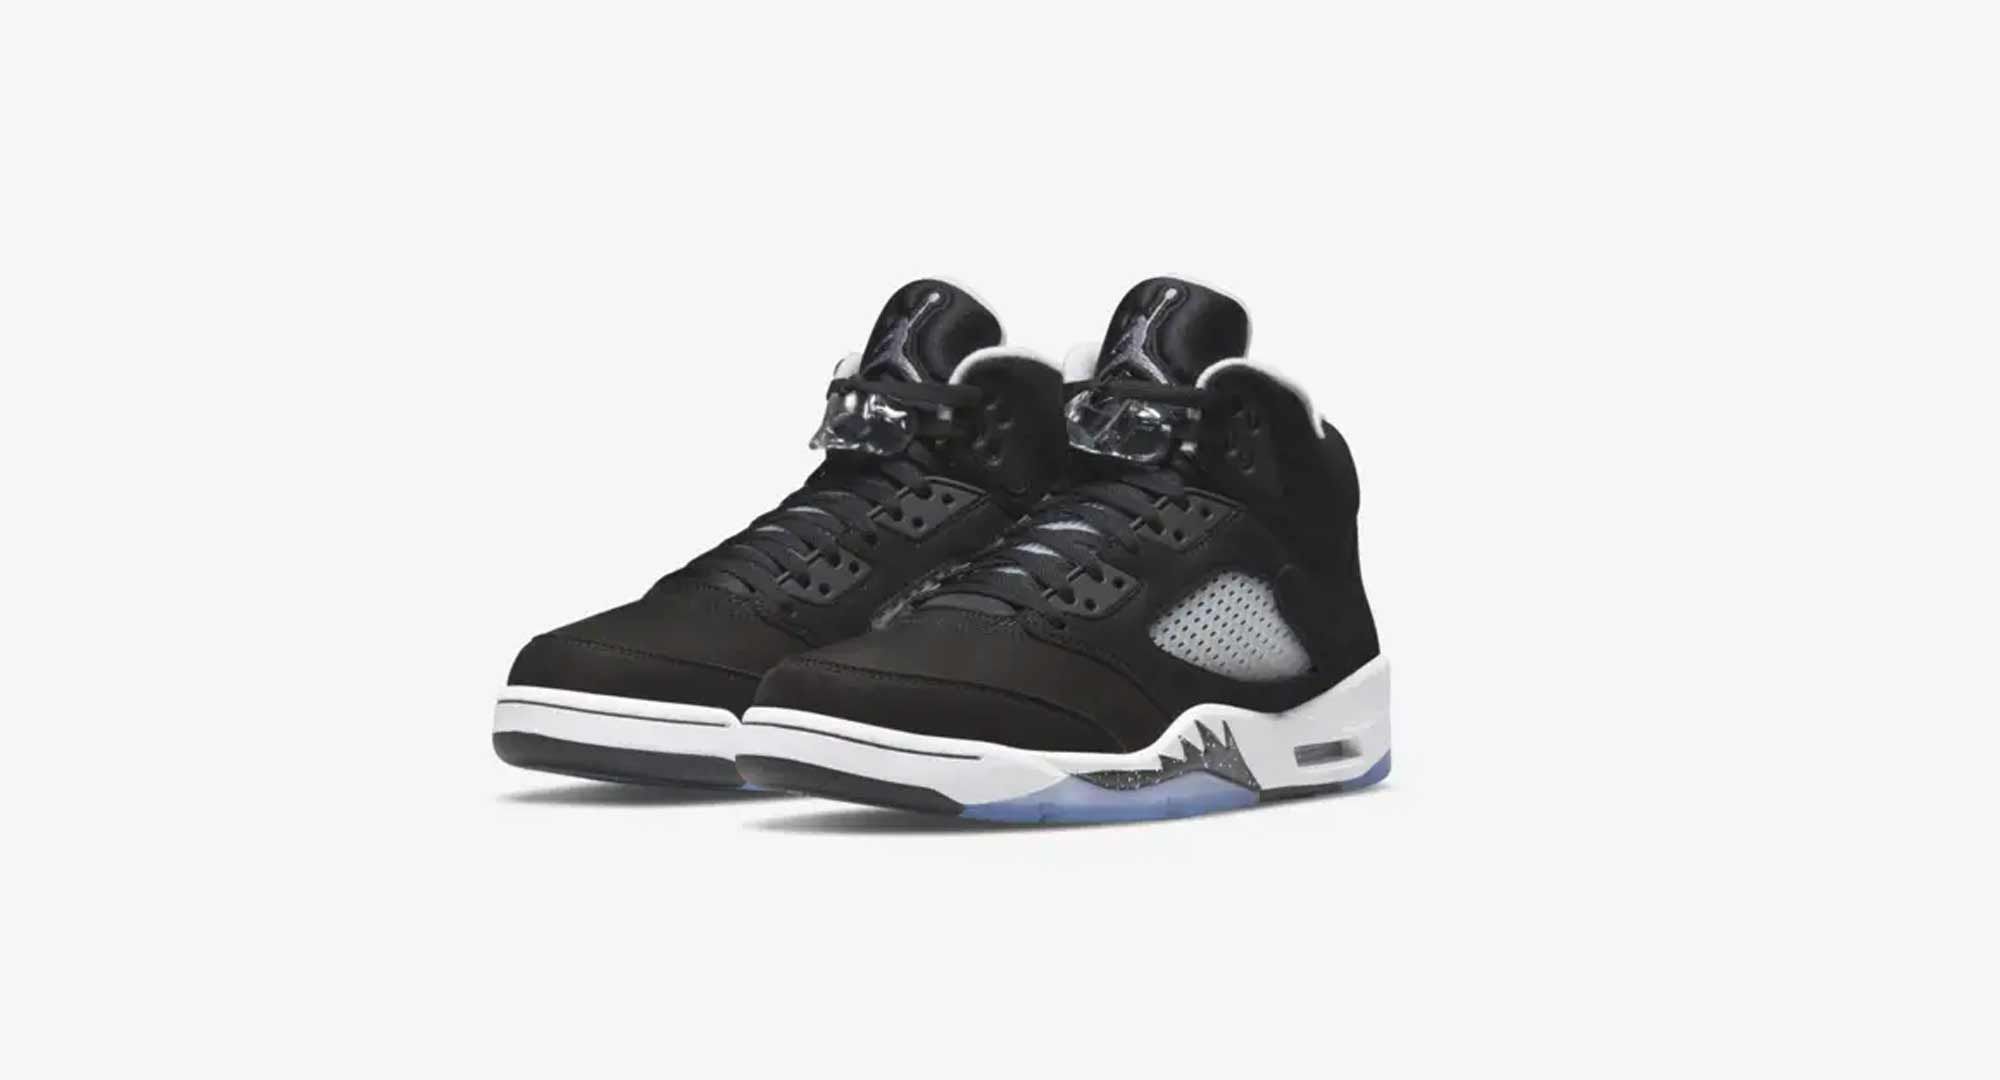 Encogerse de hombros Decepción Culpable Nike Air Jordan 4 Moonlight: las zapatillas negras para hombre